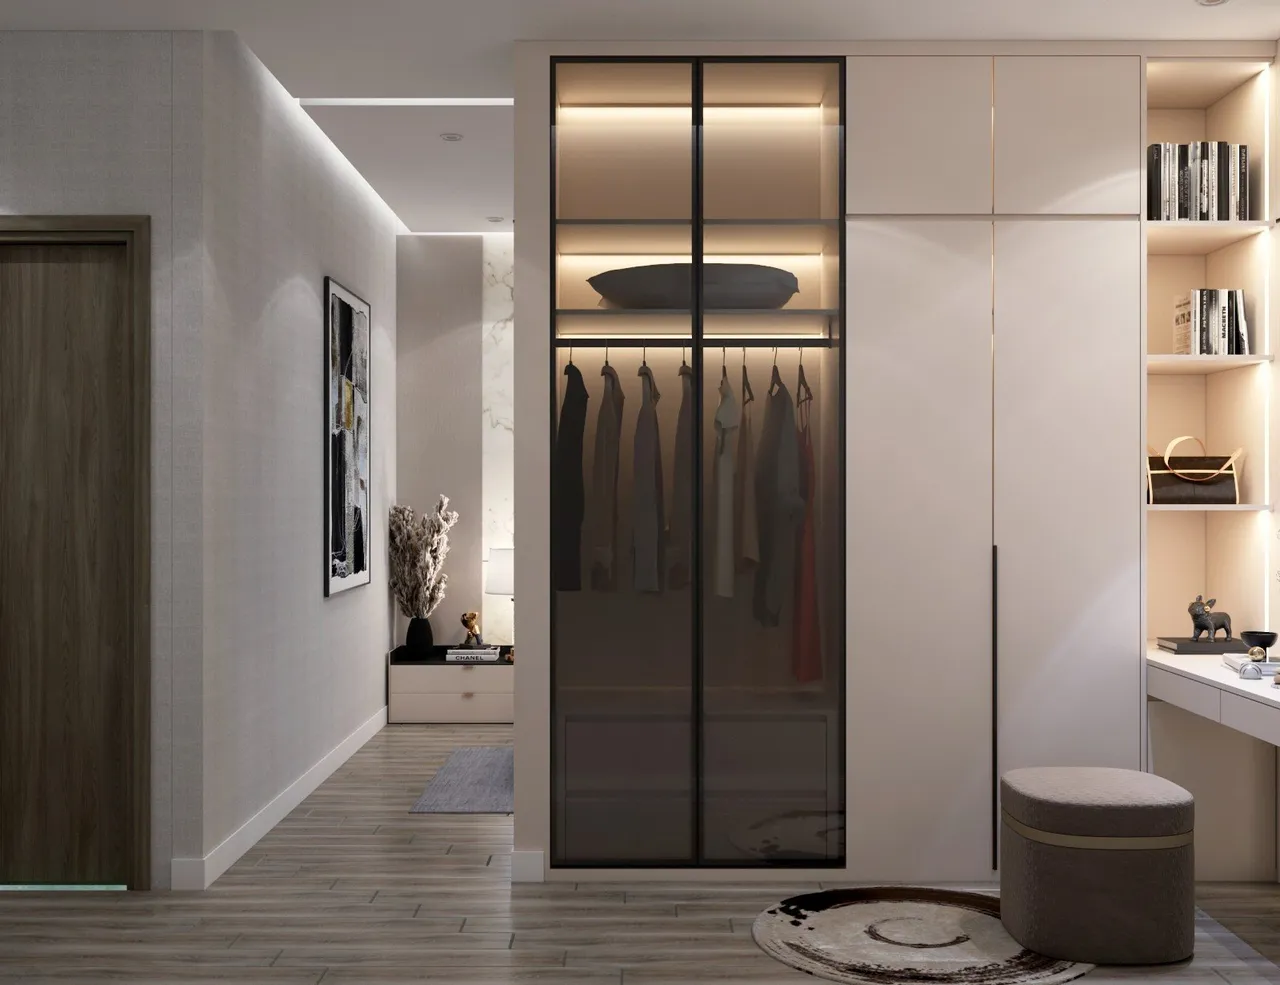 Concept nội thất khu vực thay đồ, trang điểm trong phòng ngủ Nhà phố An Giang phong cách Hiện đại Modern